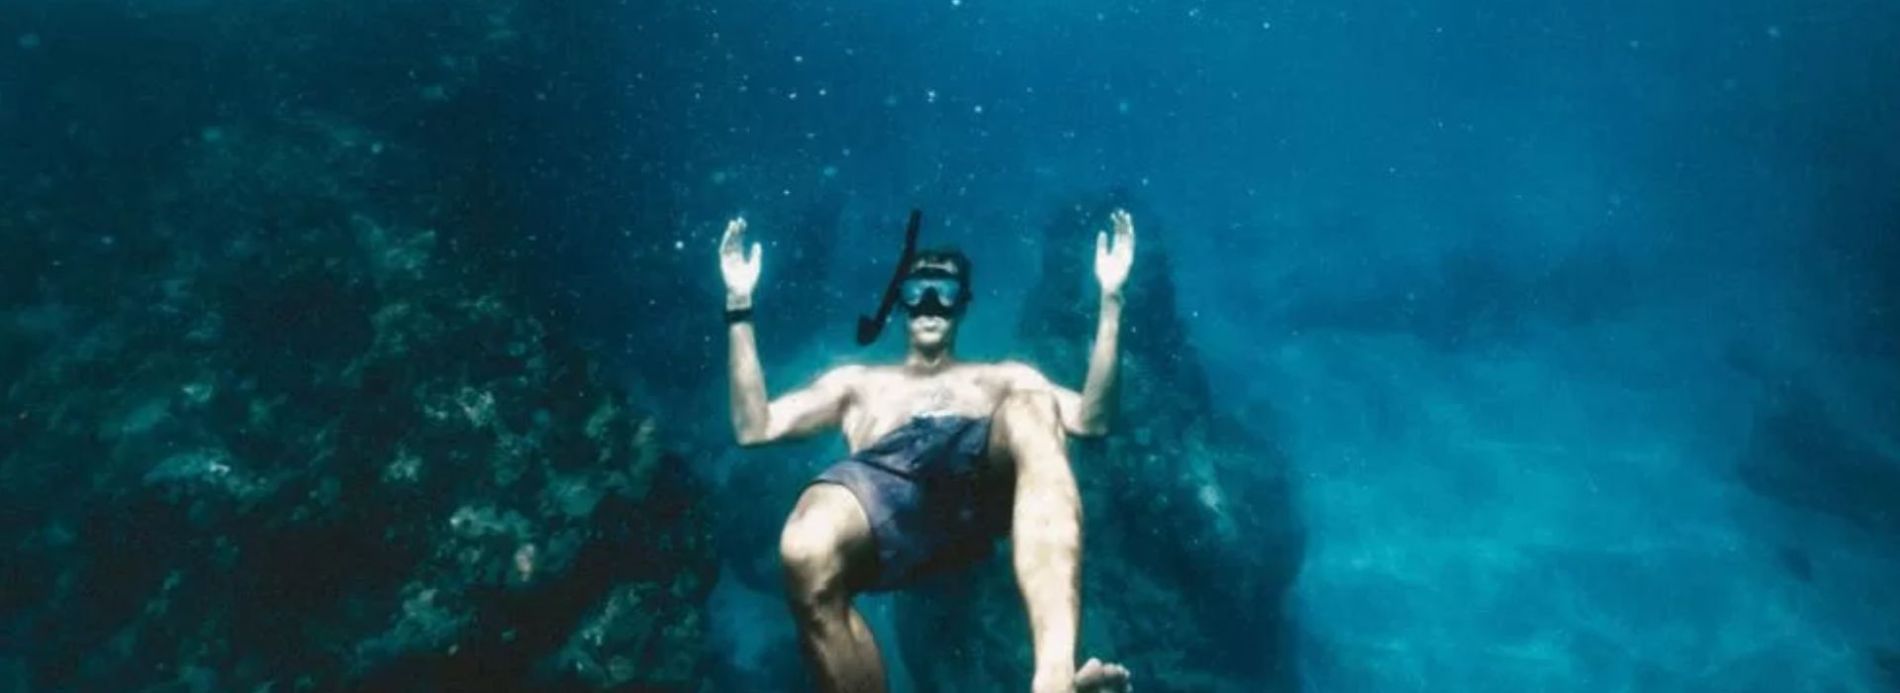 snorkeler in water